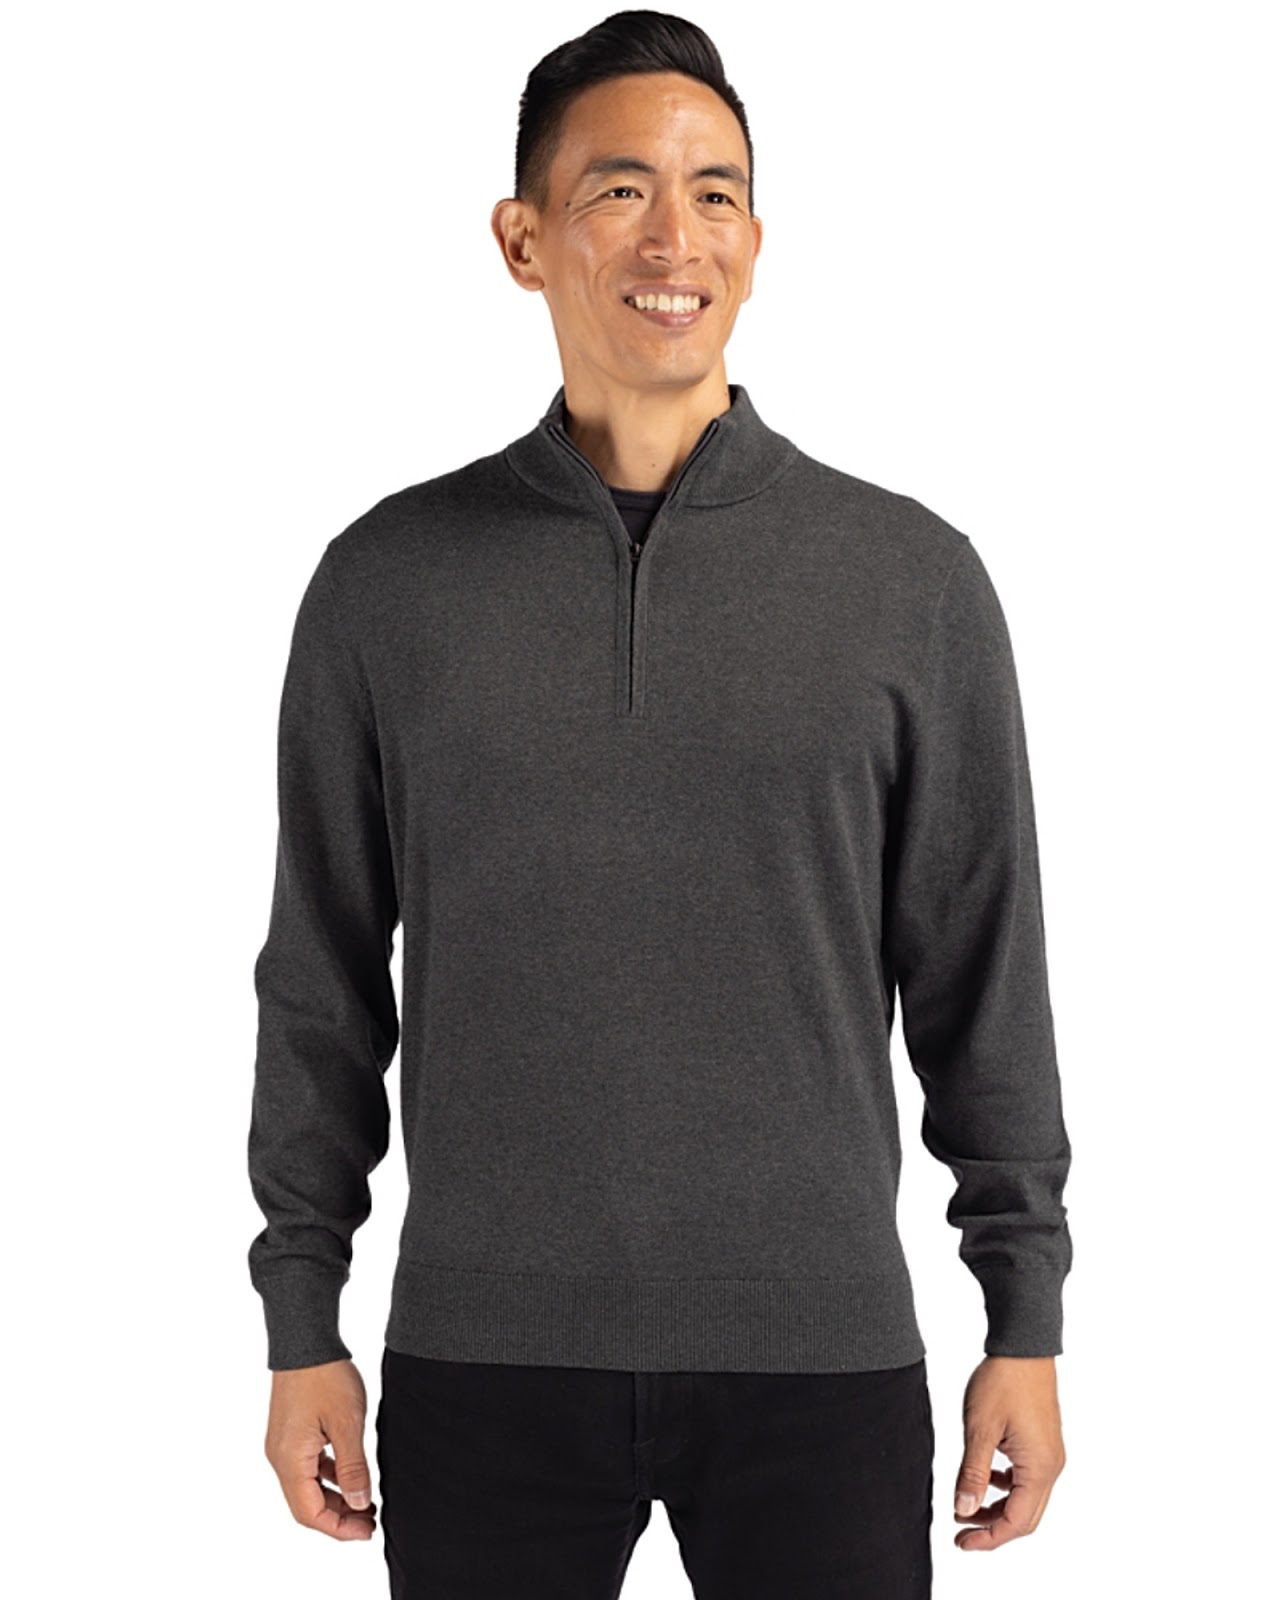 Cutter & Buck Lakemont Tri-Blend Mens Quarter Zip Pullover Sweater